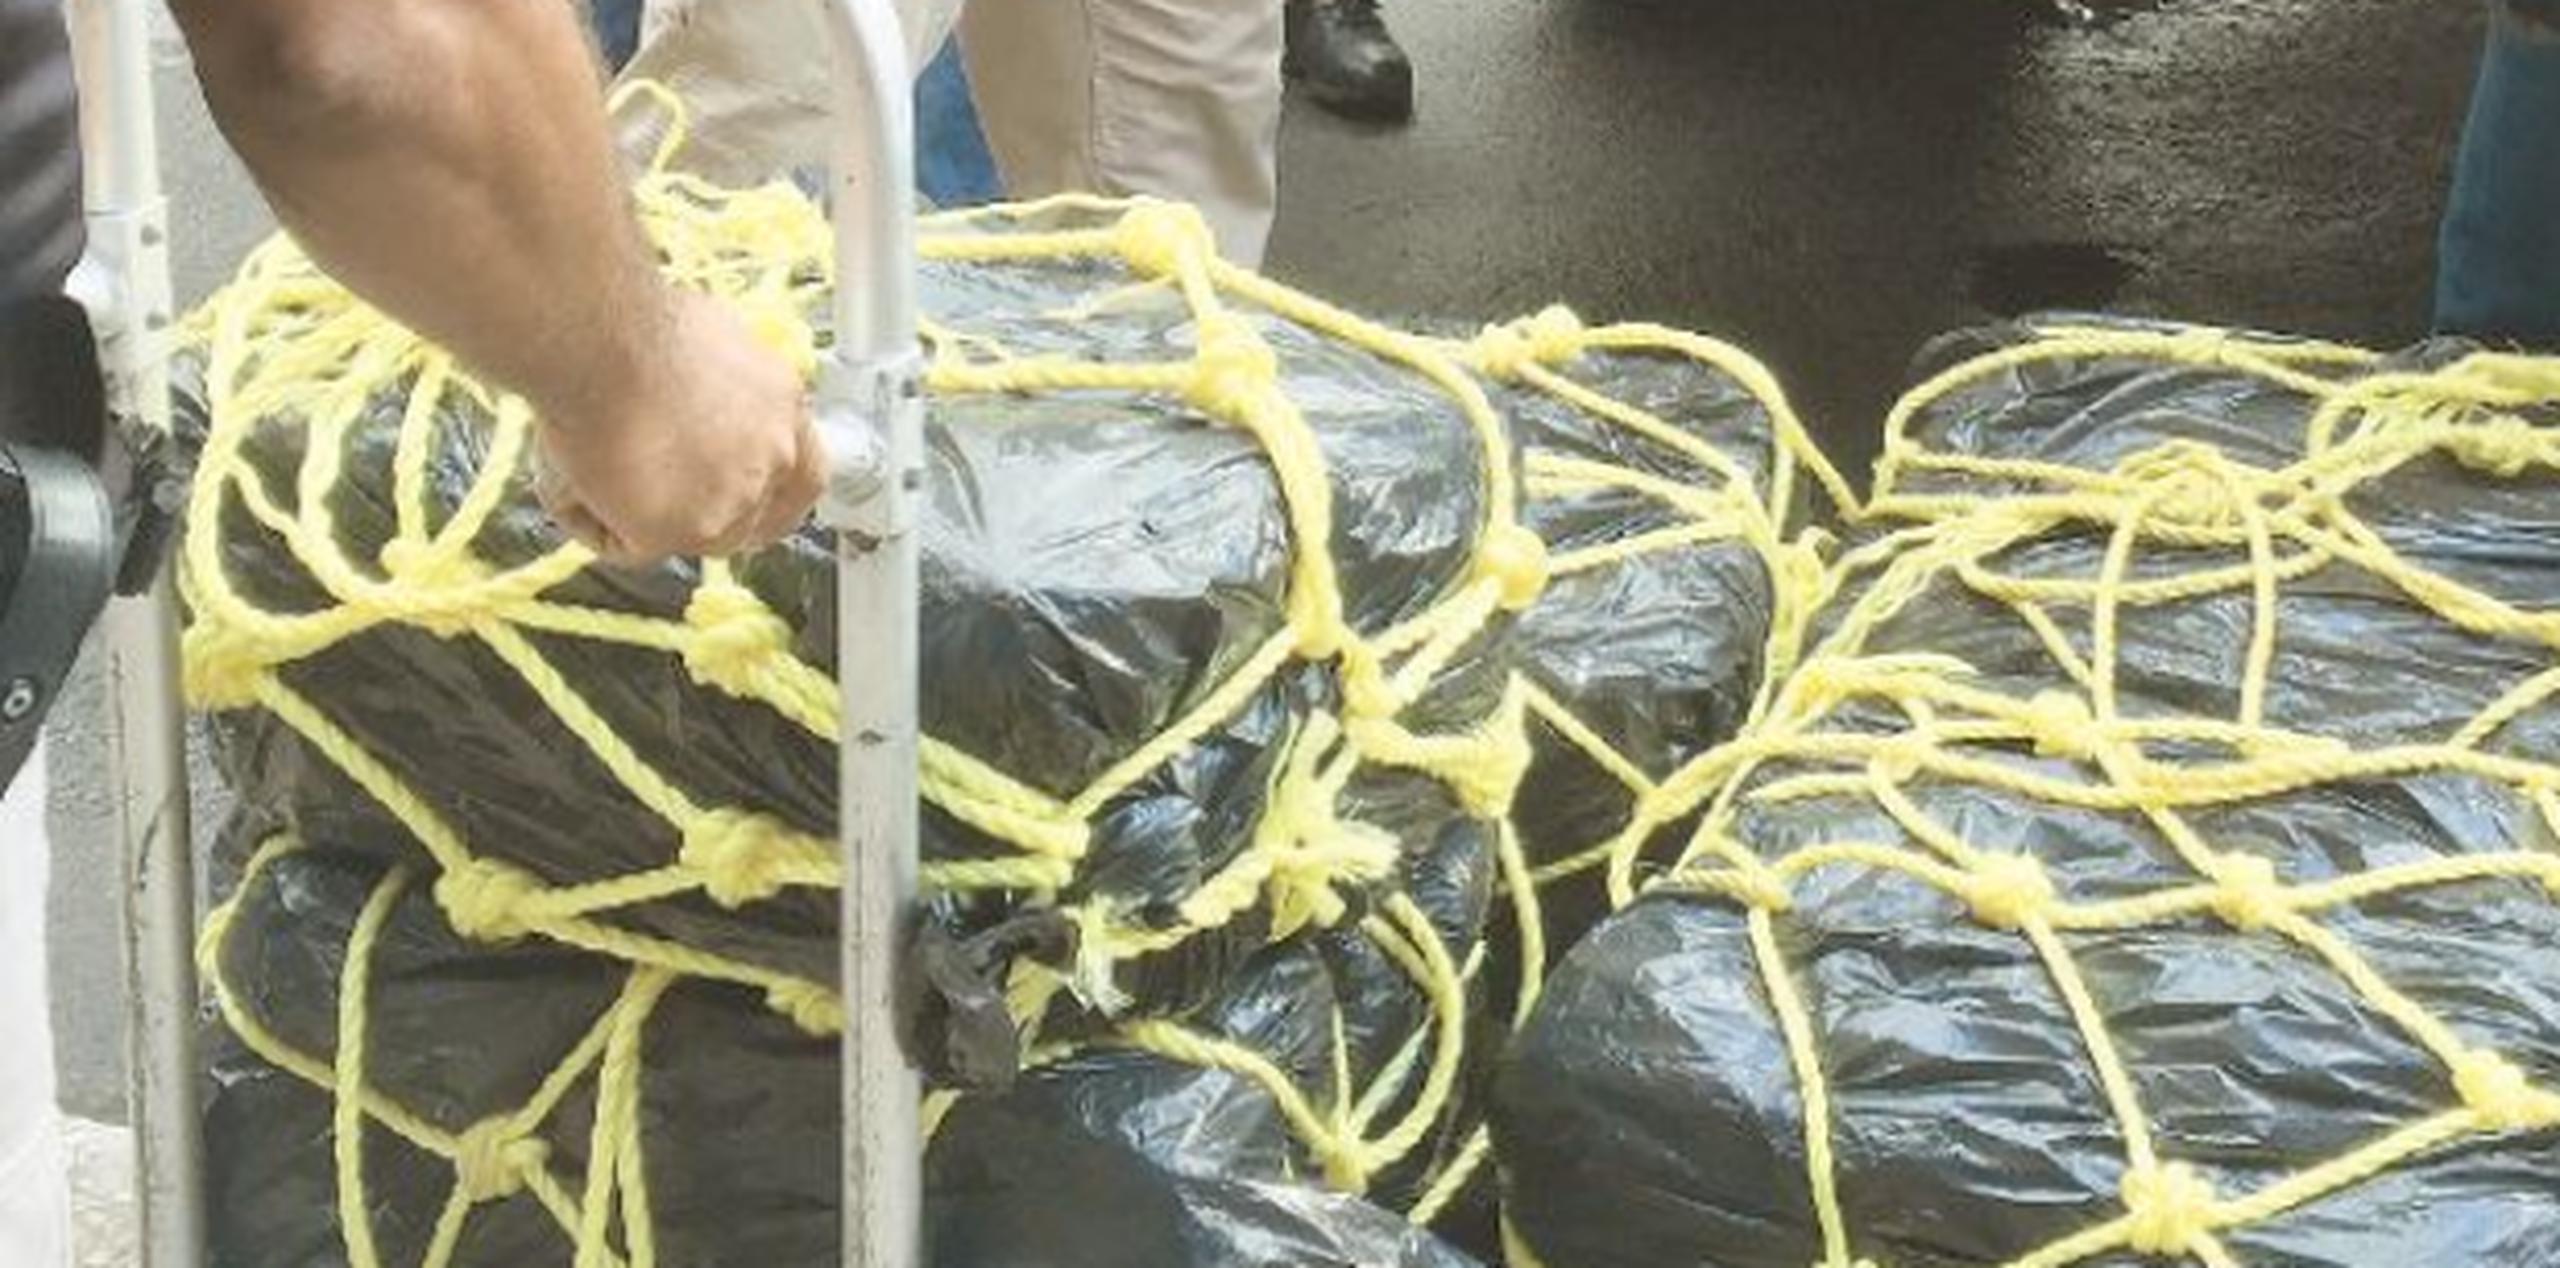 El cargamento de cocaína valorado en $1.2 millones fue recuperado en una lancha a seis millas náuticas de Fajardo. (Archivo)